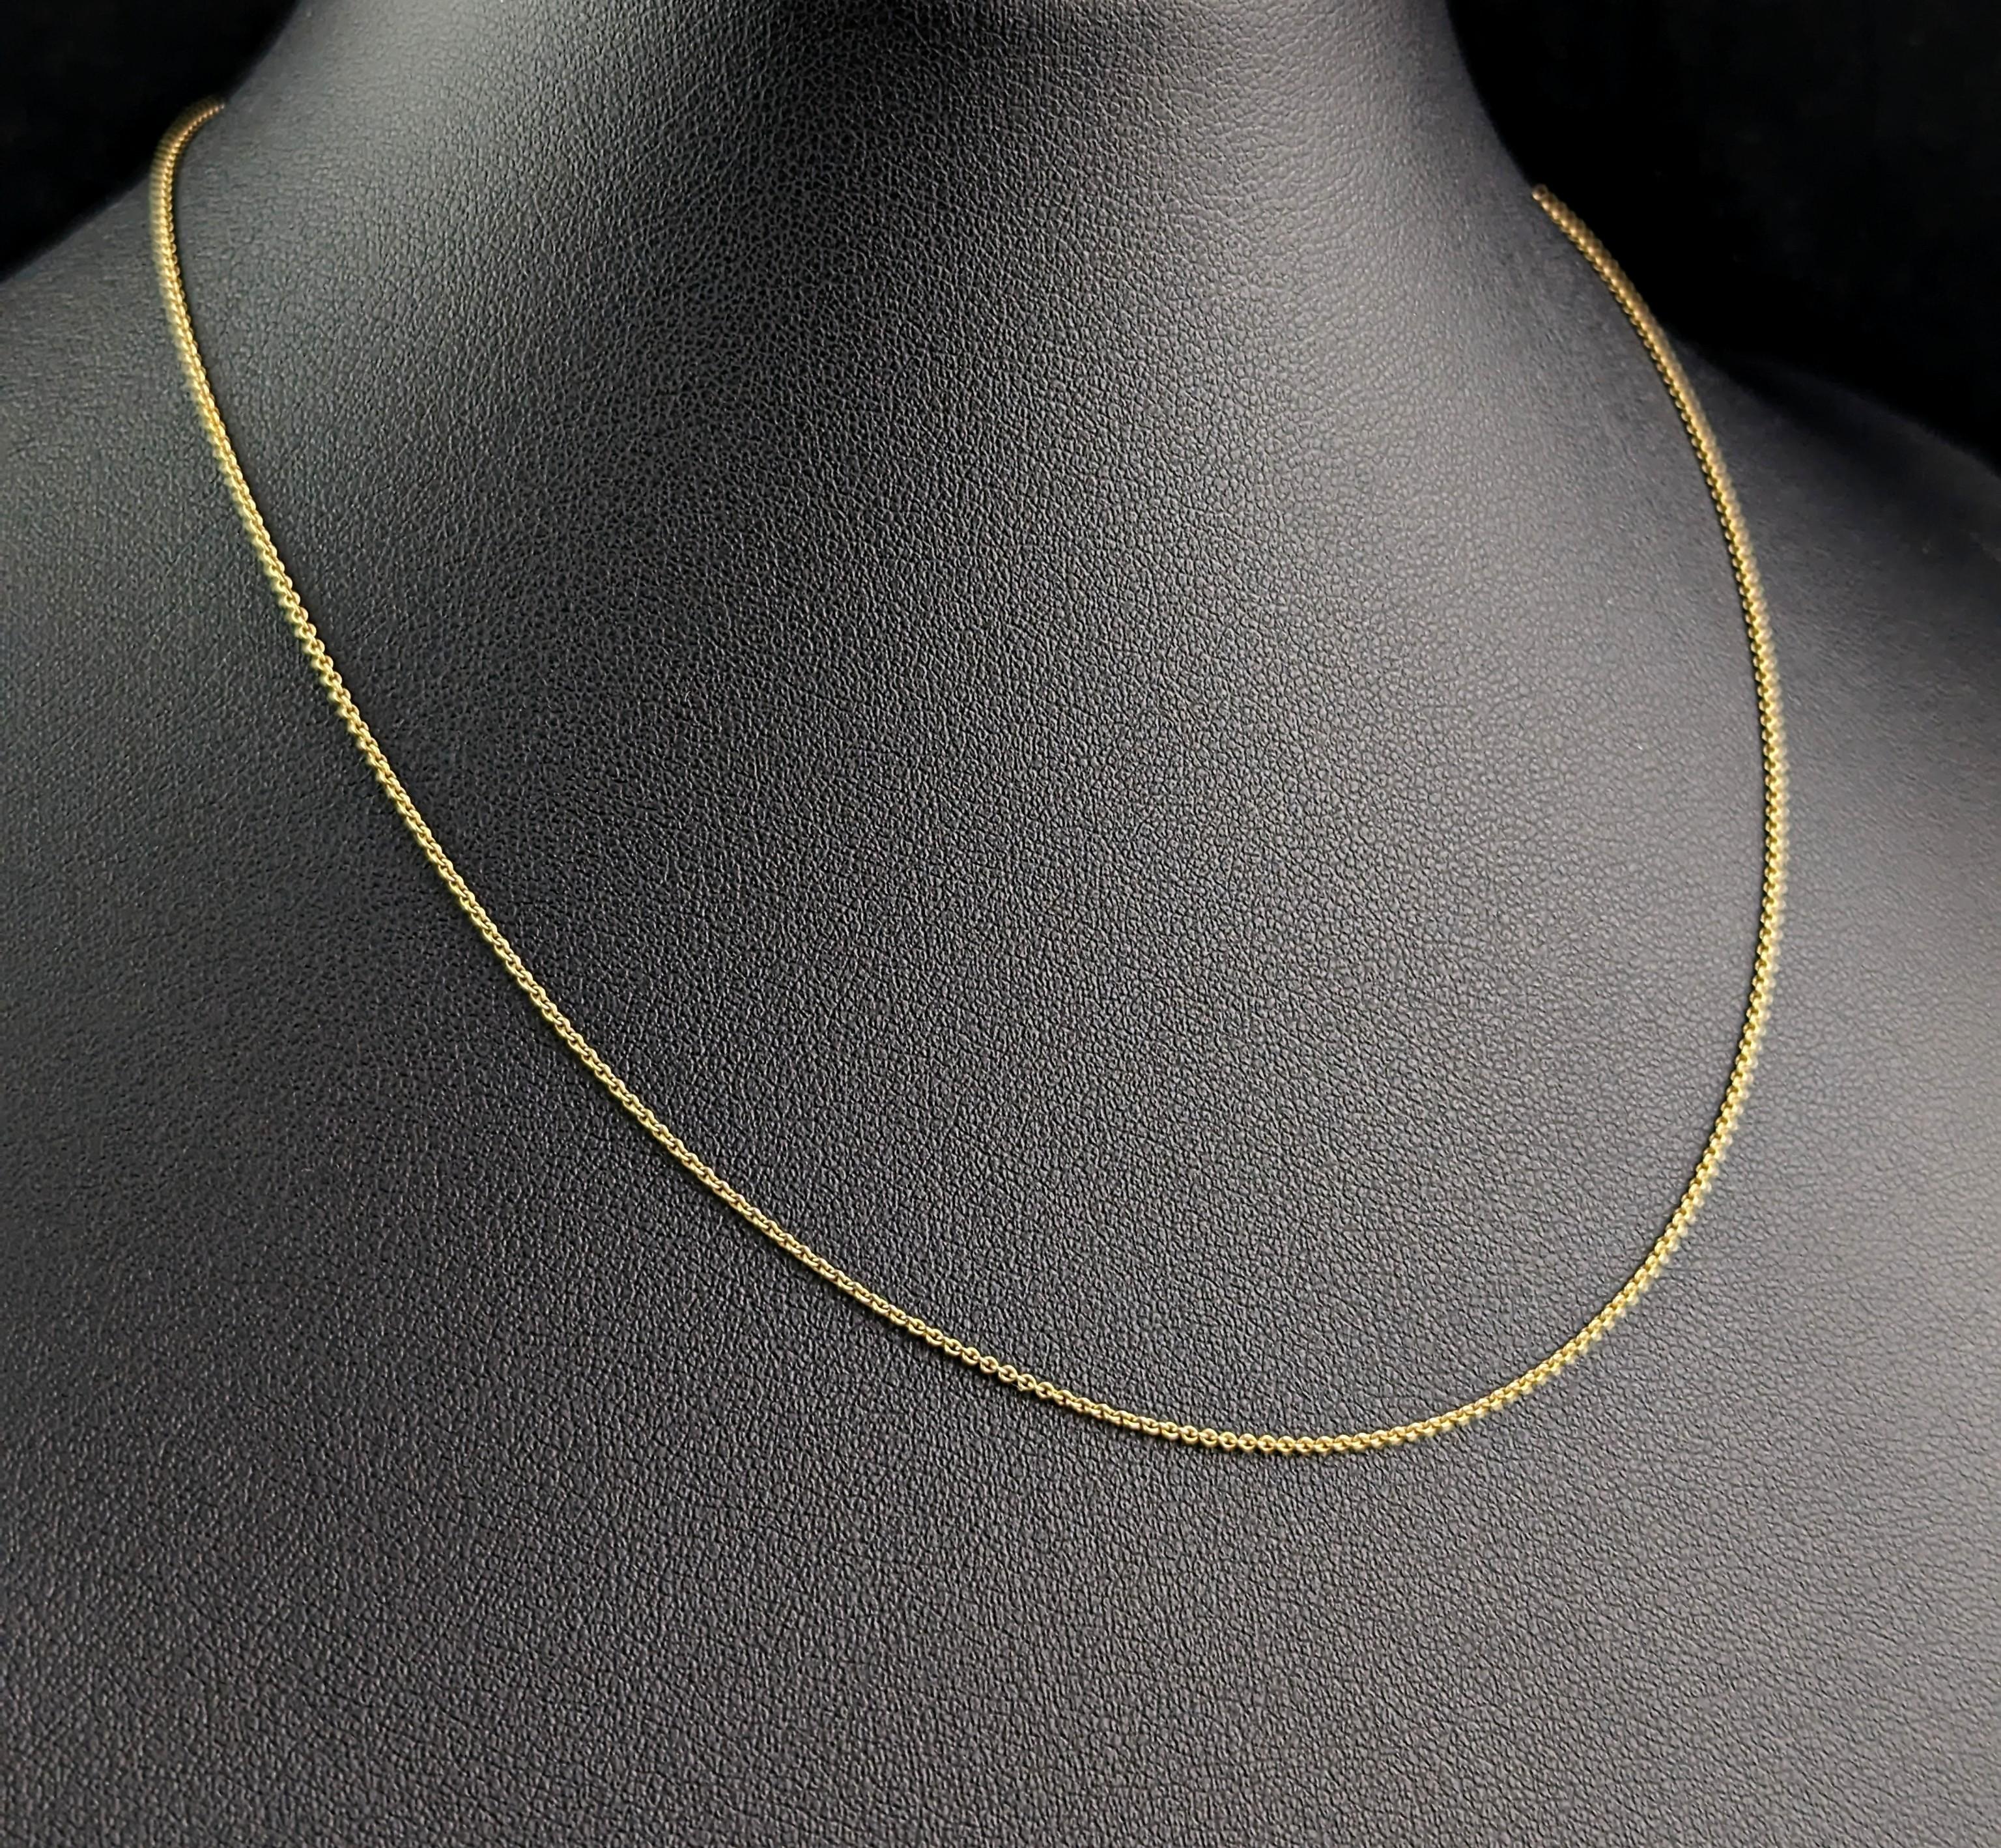 Une chaîne fine et délicate en or 15ct antique comme celle-ci accompagne parfaitement vos petits médaillons, pendentifs et charmes préférés.

Il s'agit d'un fin maillon de trace rolo en or jaune riche avec un fermoir à anneau à ressort.

Il est de